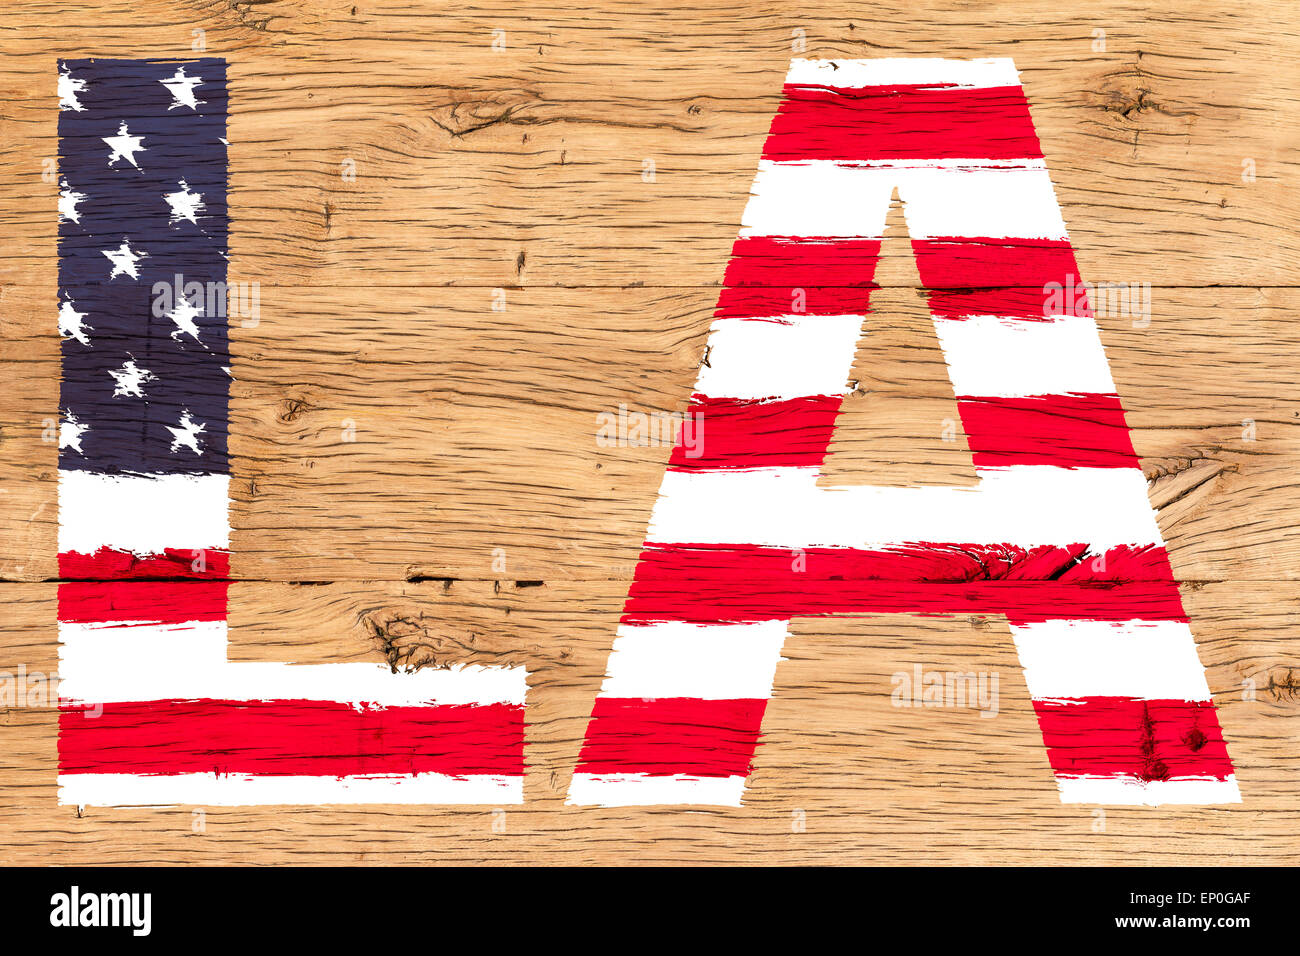 Los Angeles, LA Text mit Muster der Flagge USA gemalt. Malerei ist bunt auf alten Eichen-Holz. Stockfoto